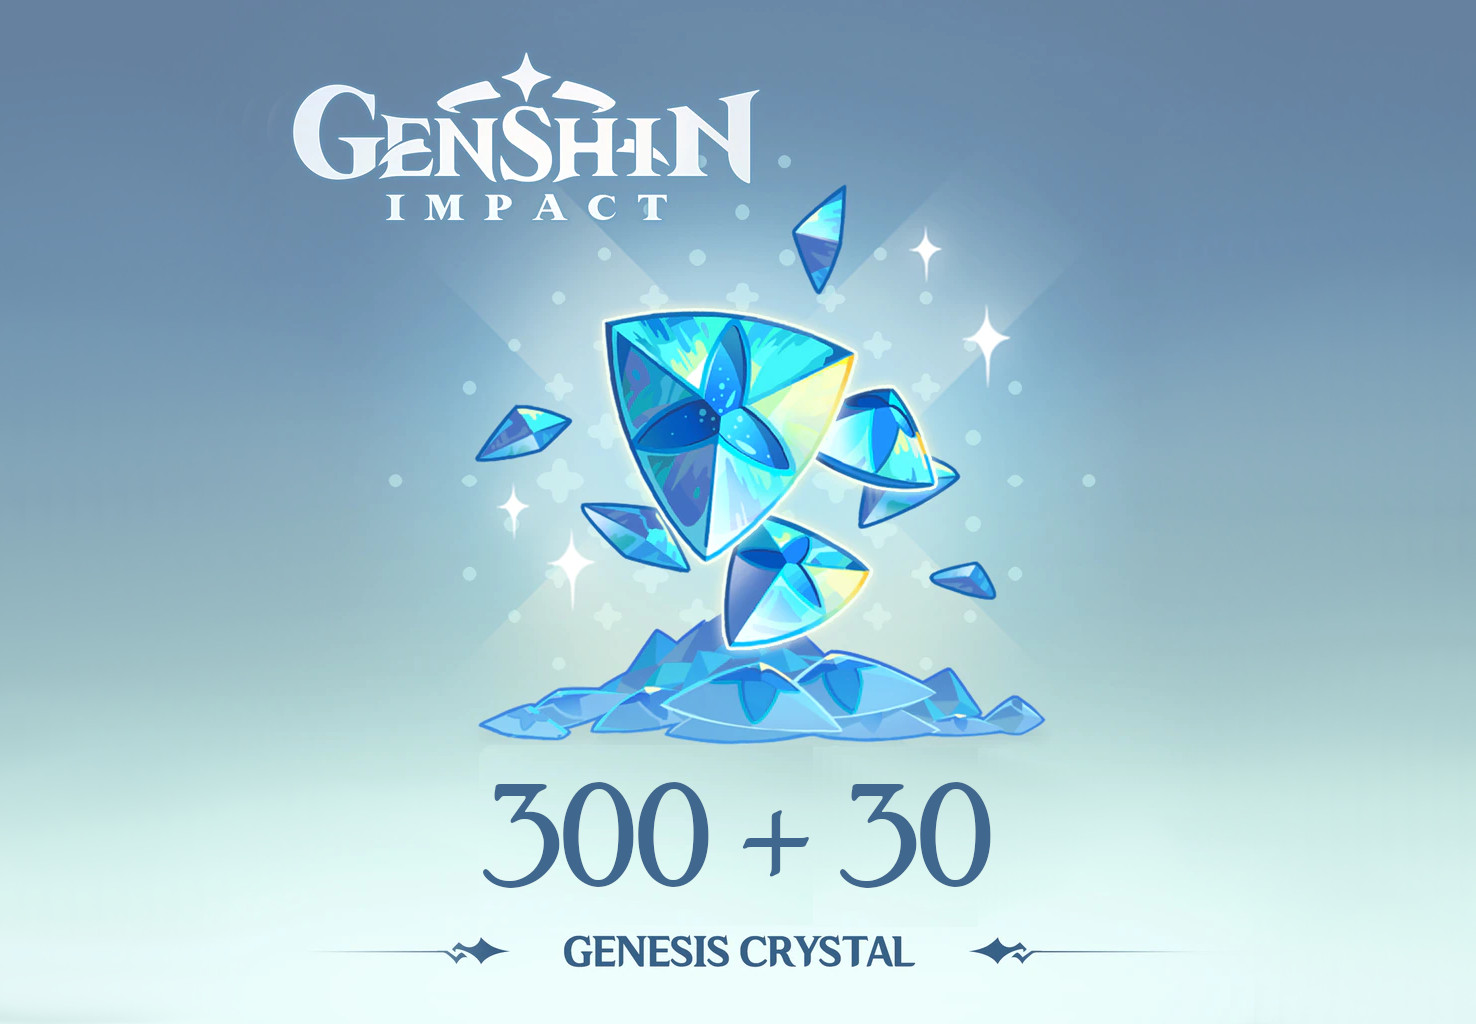 Genshin Impact - 300 + 30 Genesis Crystals Reidos Voucher (5.37$)